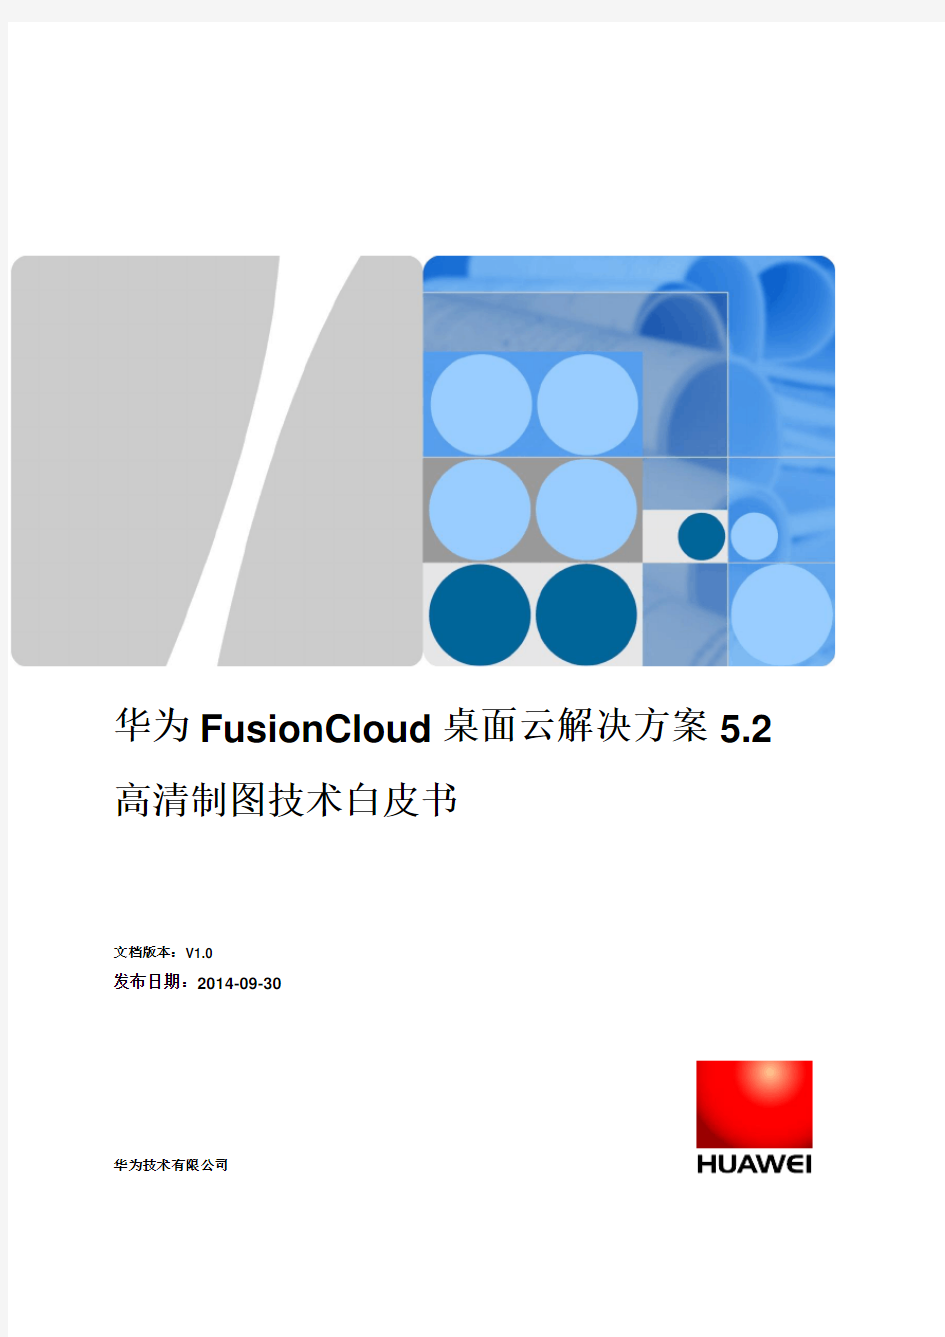 华为FusionCloud桌面云解决方案5.2高清制图技术白皮书